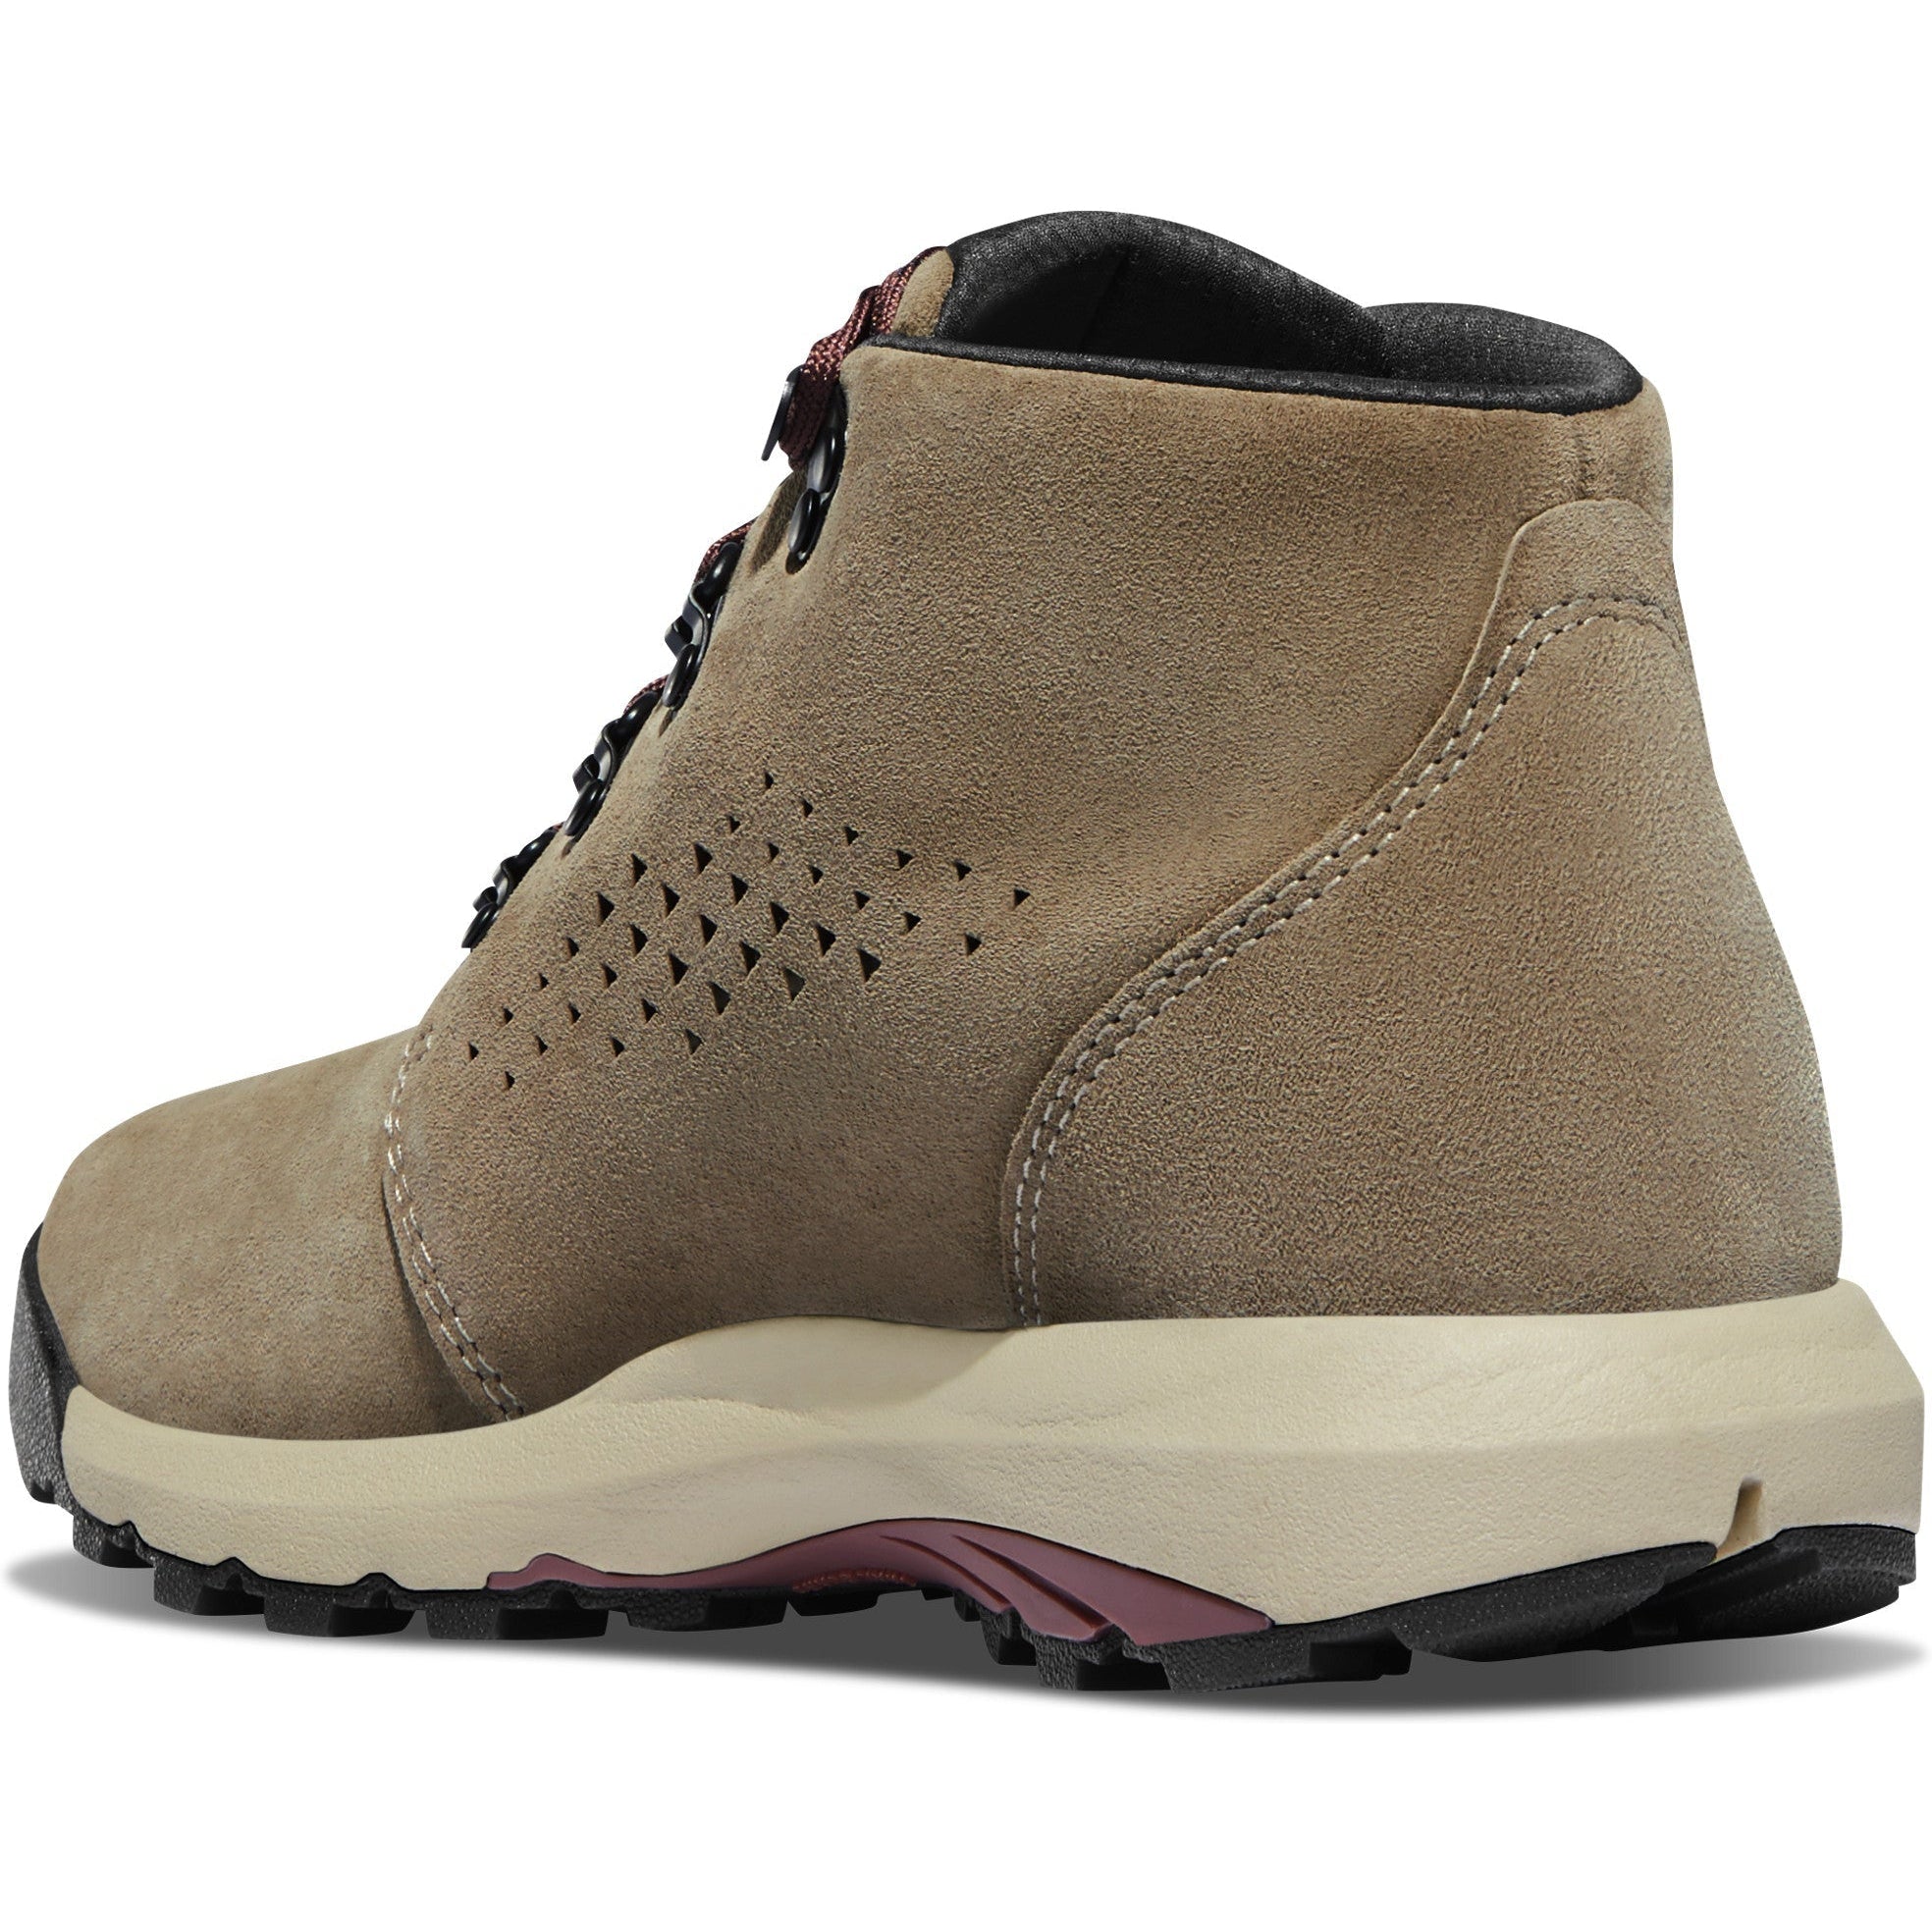 Danner Women's Inquire Chukka 4" WP Hiking Boot - Gray/Plum - 64501  - Overlook Boots